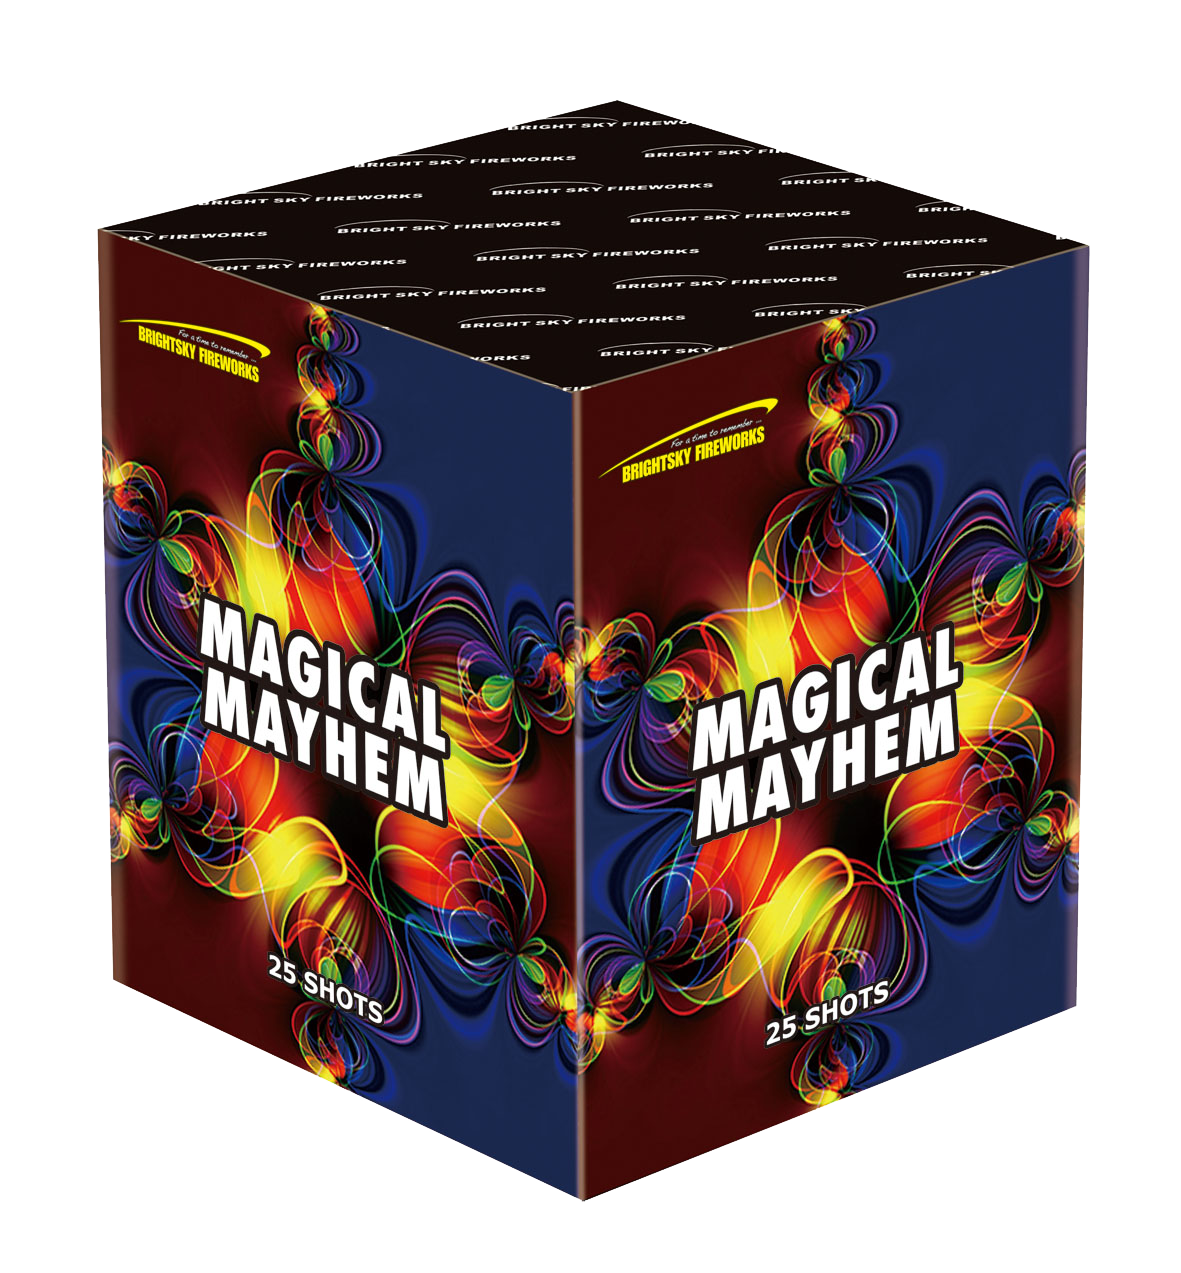 MAGICAL MAYHEM (25 SHOTS)